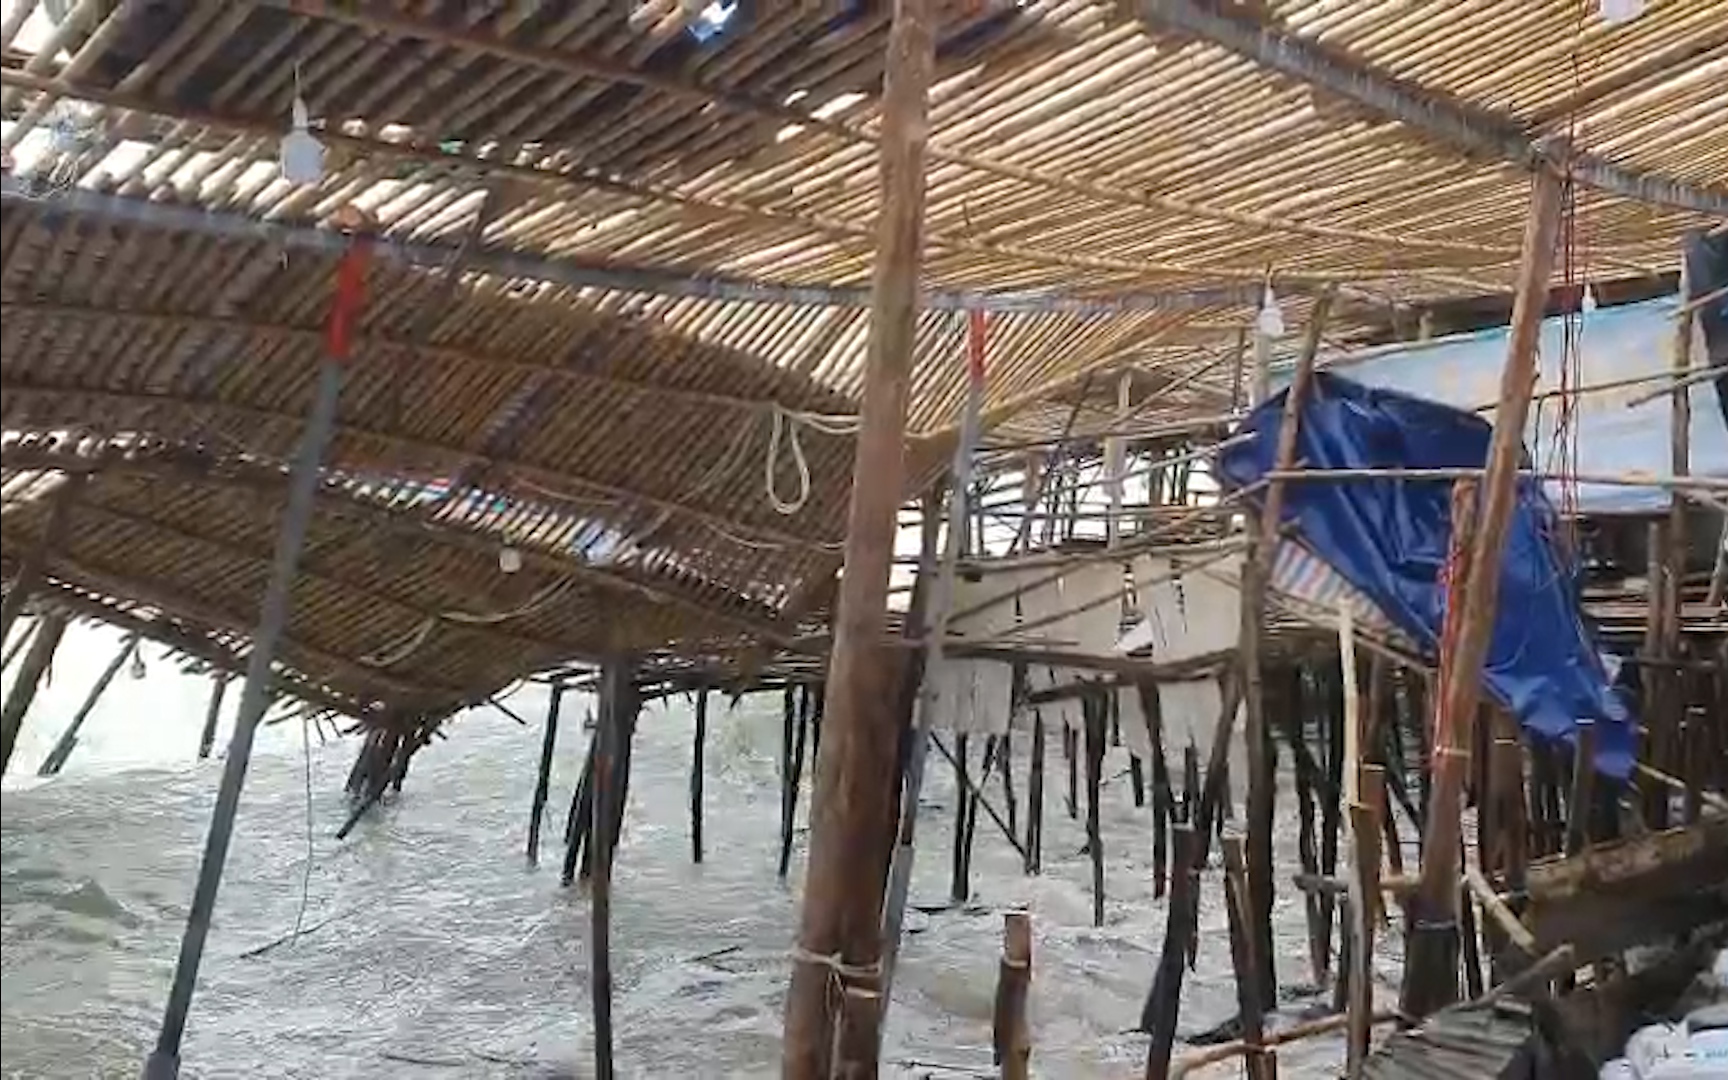 Sóng dữ cao hơn 2m dồn dập đánh vào bờ làm hư hỏng nhiều hàng quán tại Khánh Hòa